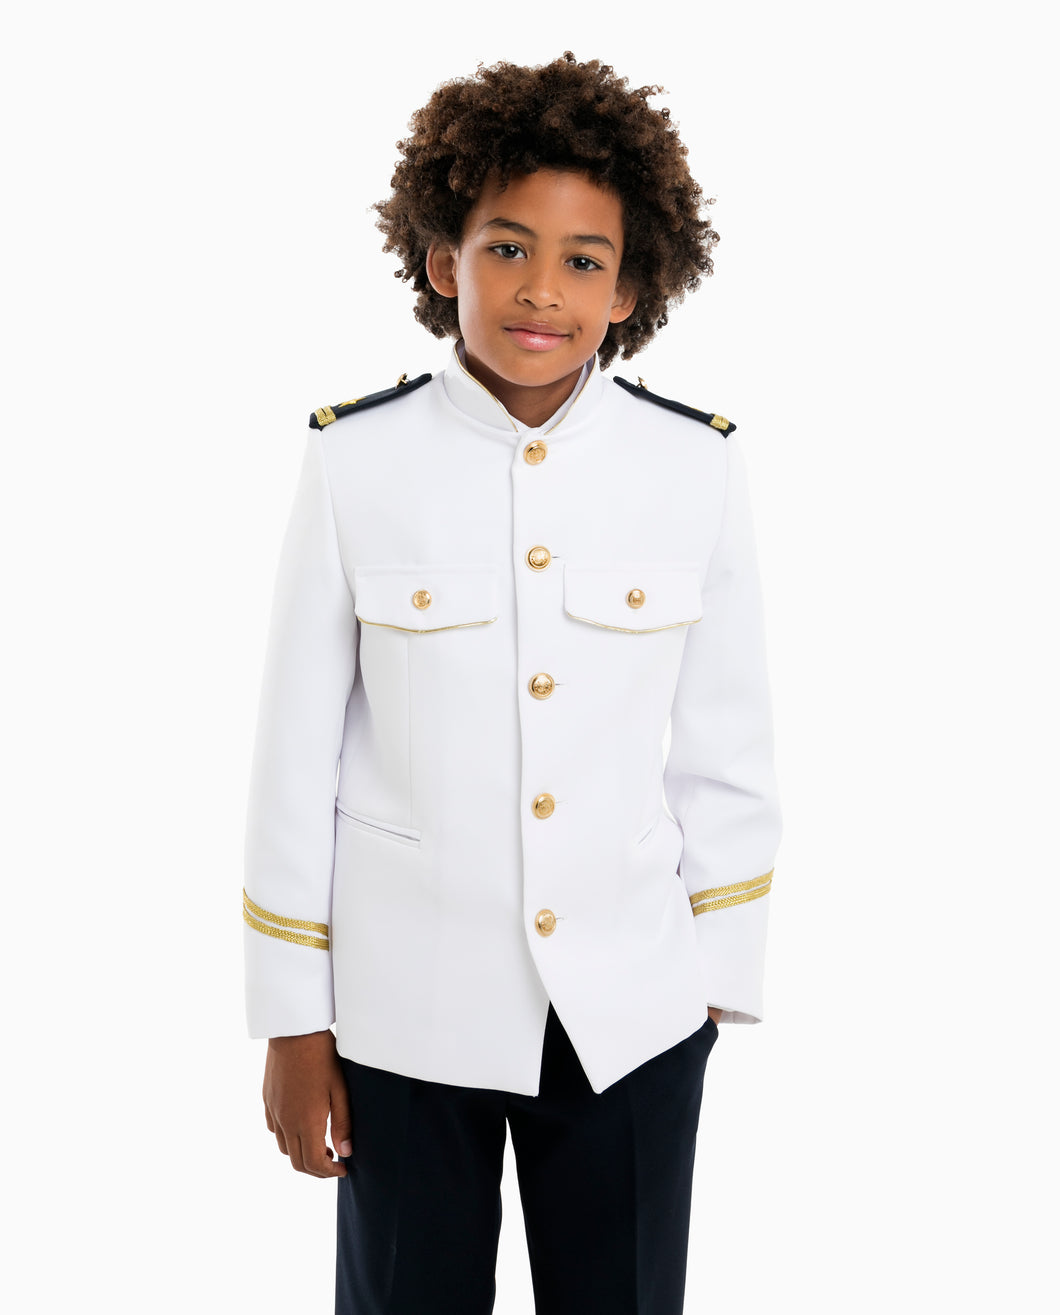 Admiral Helmsman Communion Suit 2598